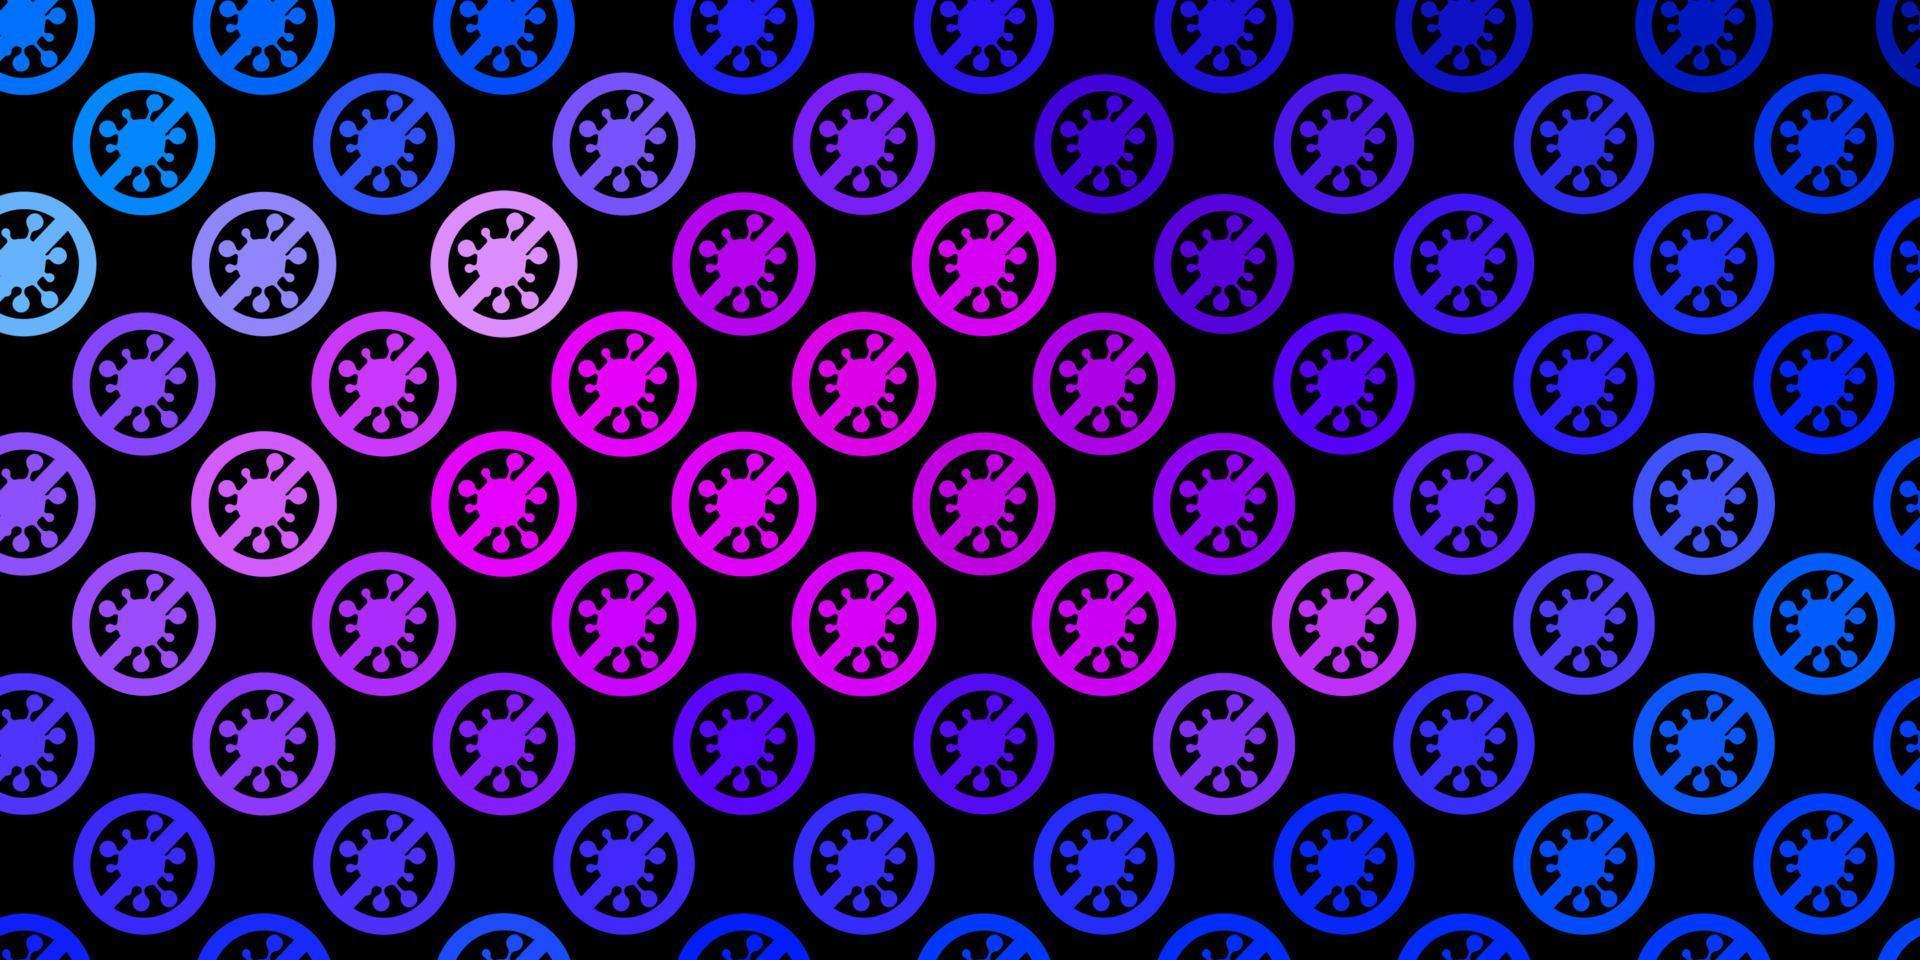 donkerblauwe, rode vectorachtergrond met virussymbolen. vector